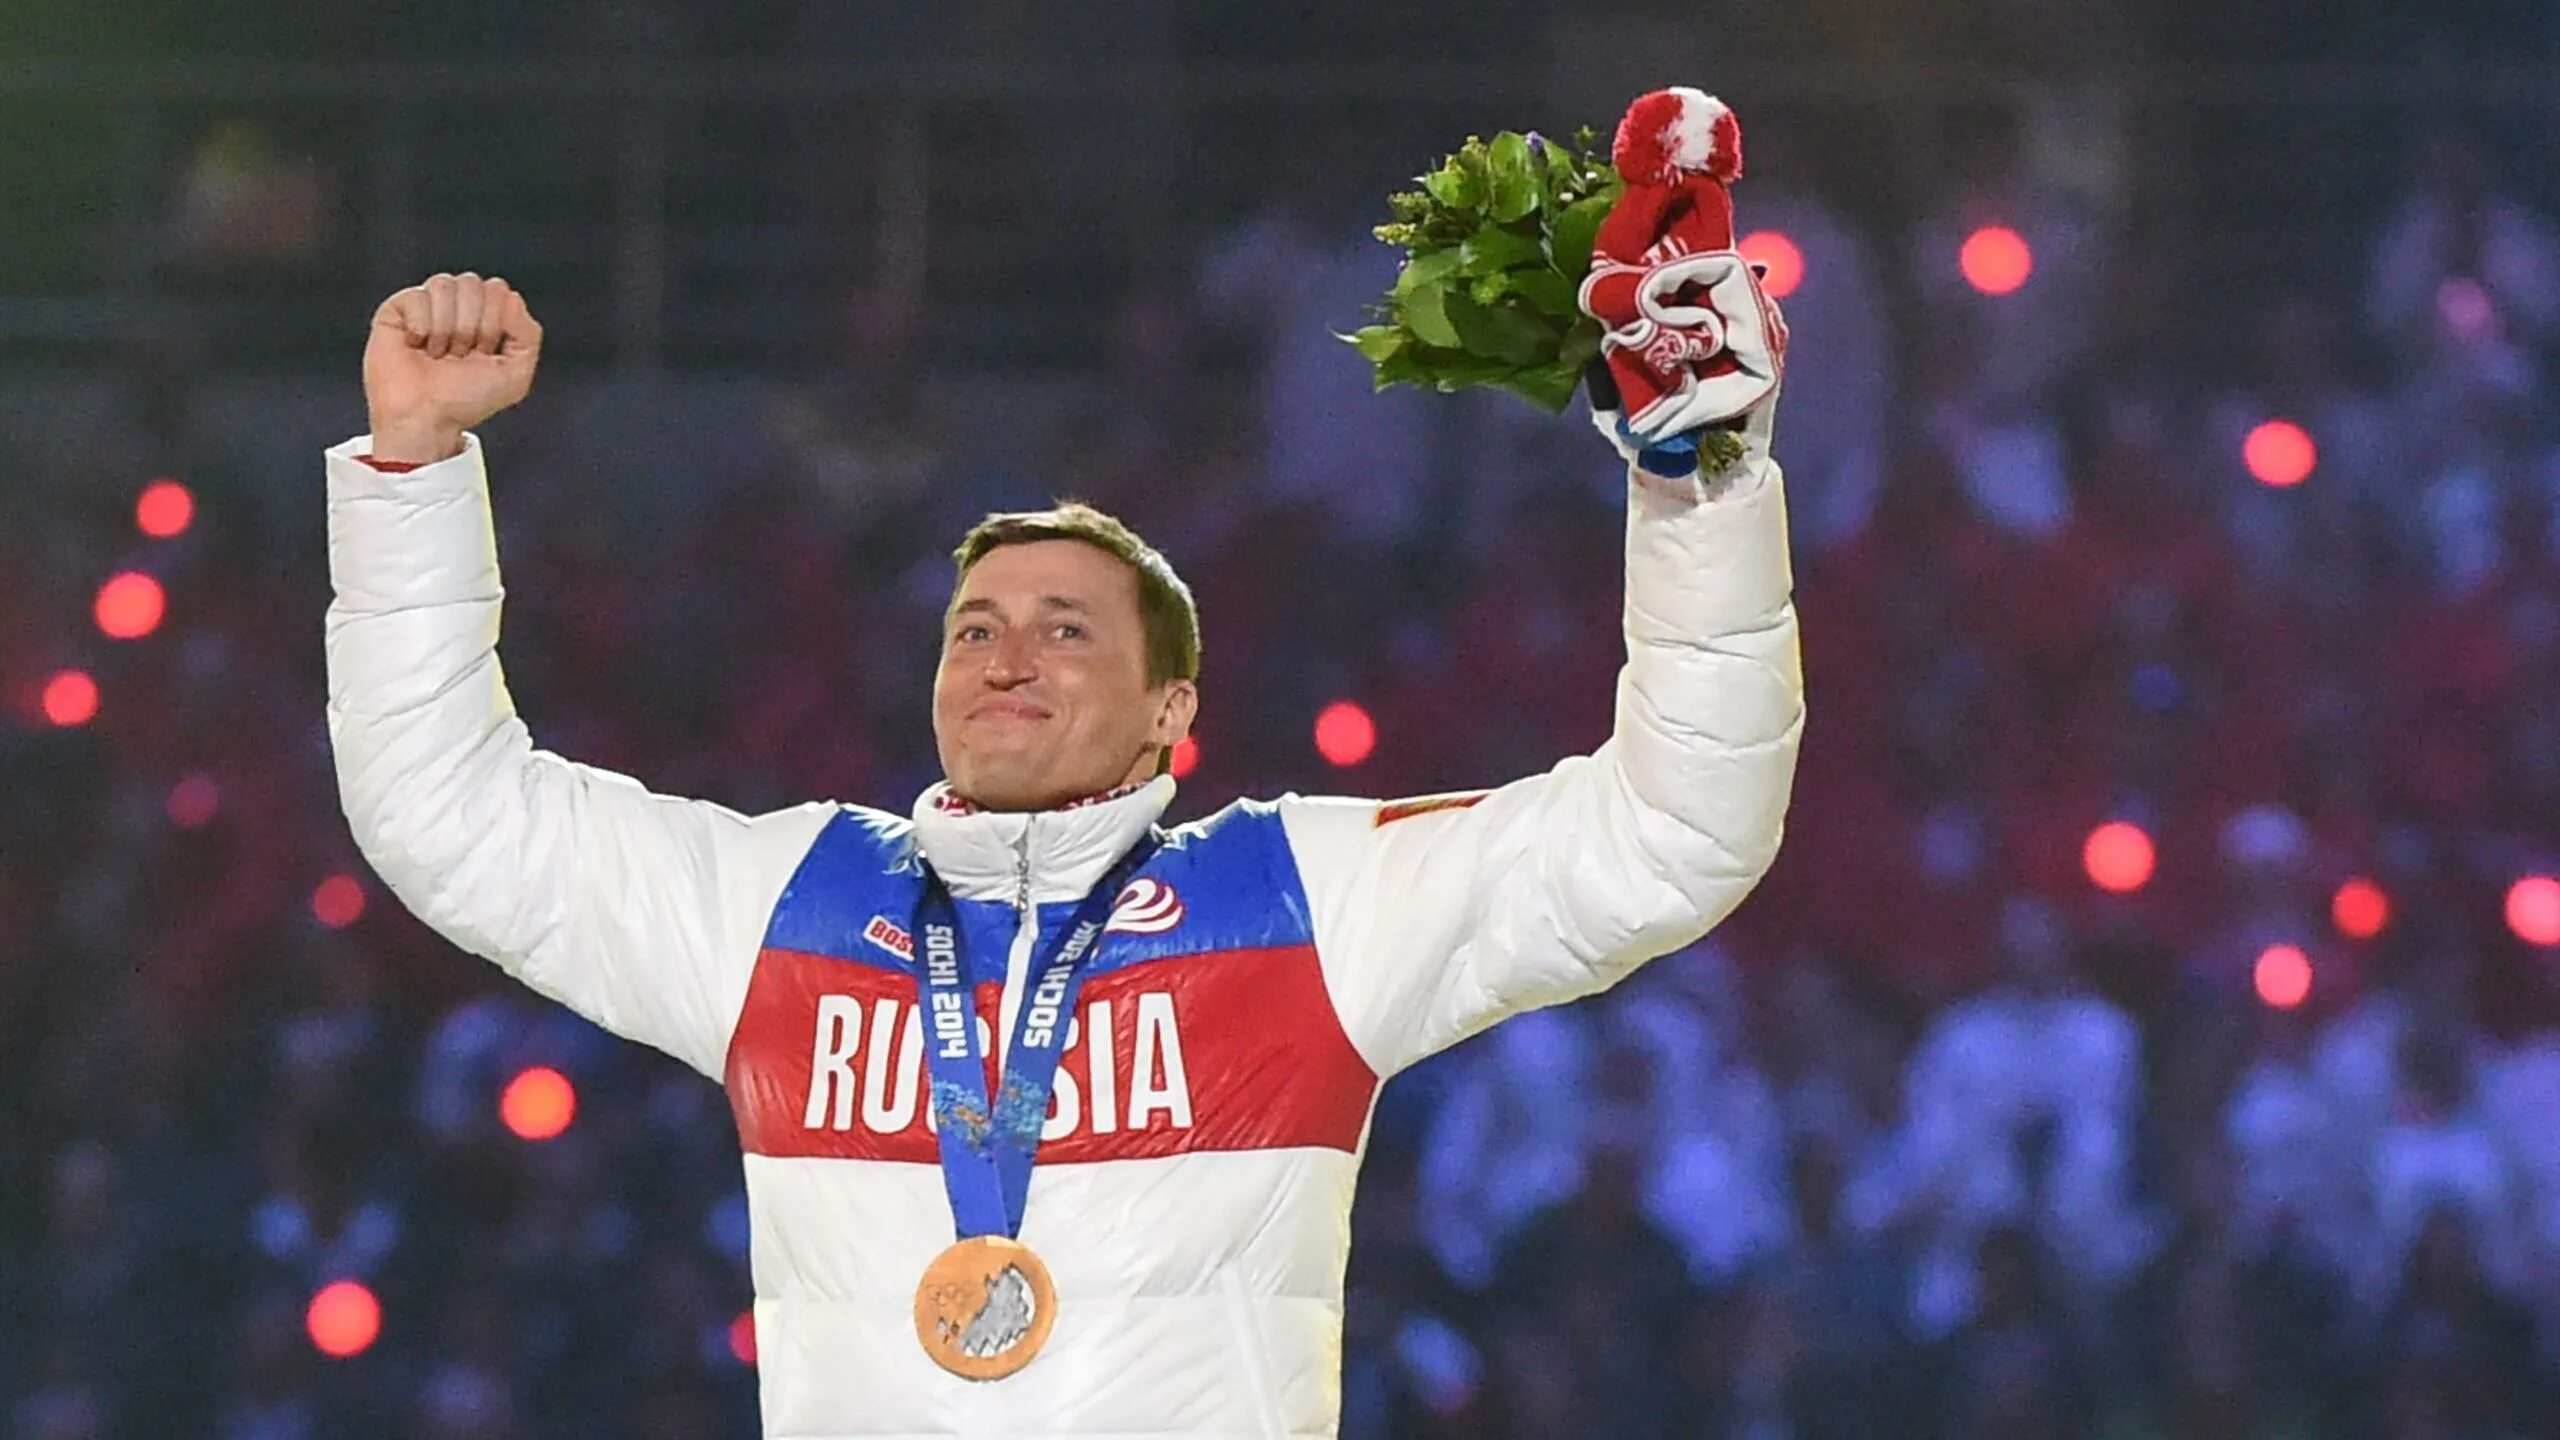 Легков Олимпийский чемпион. Чемпионы олимпийских игр 2014